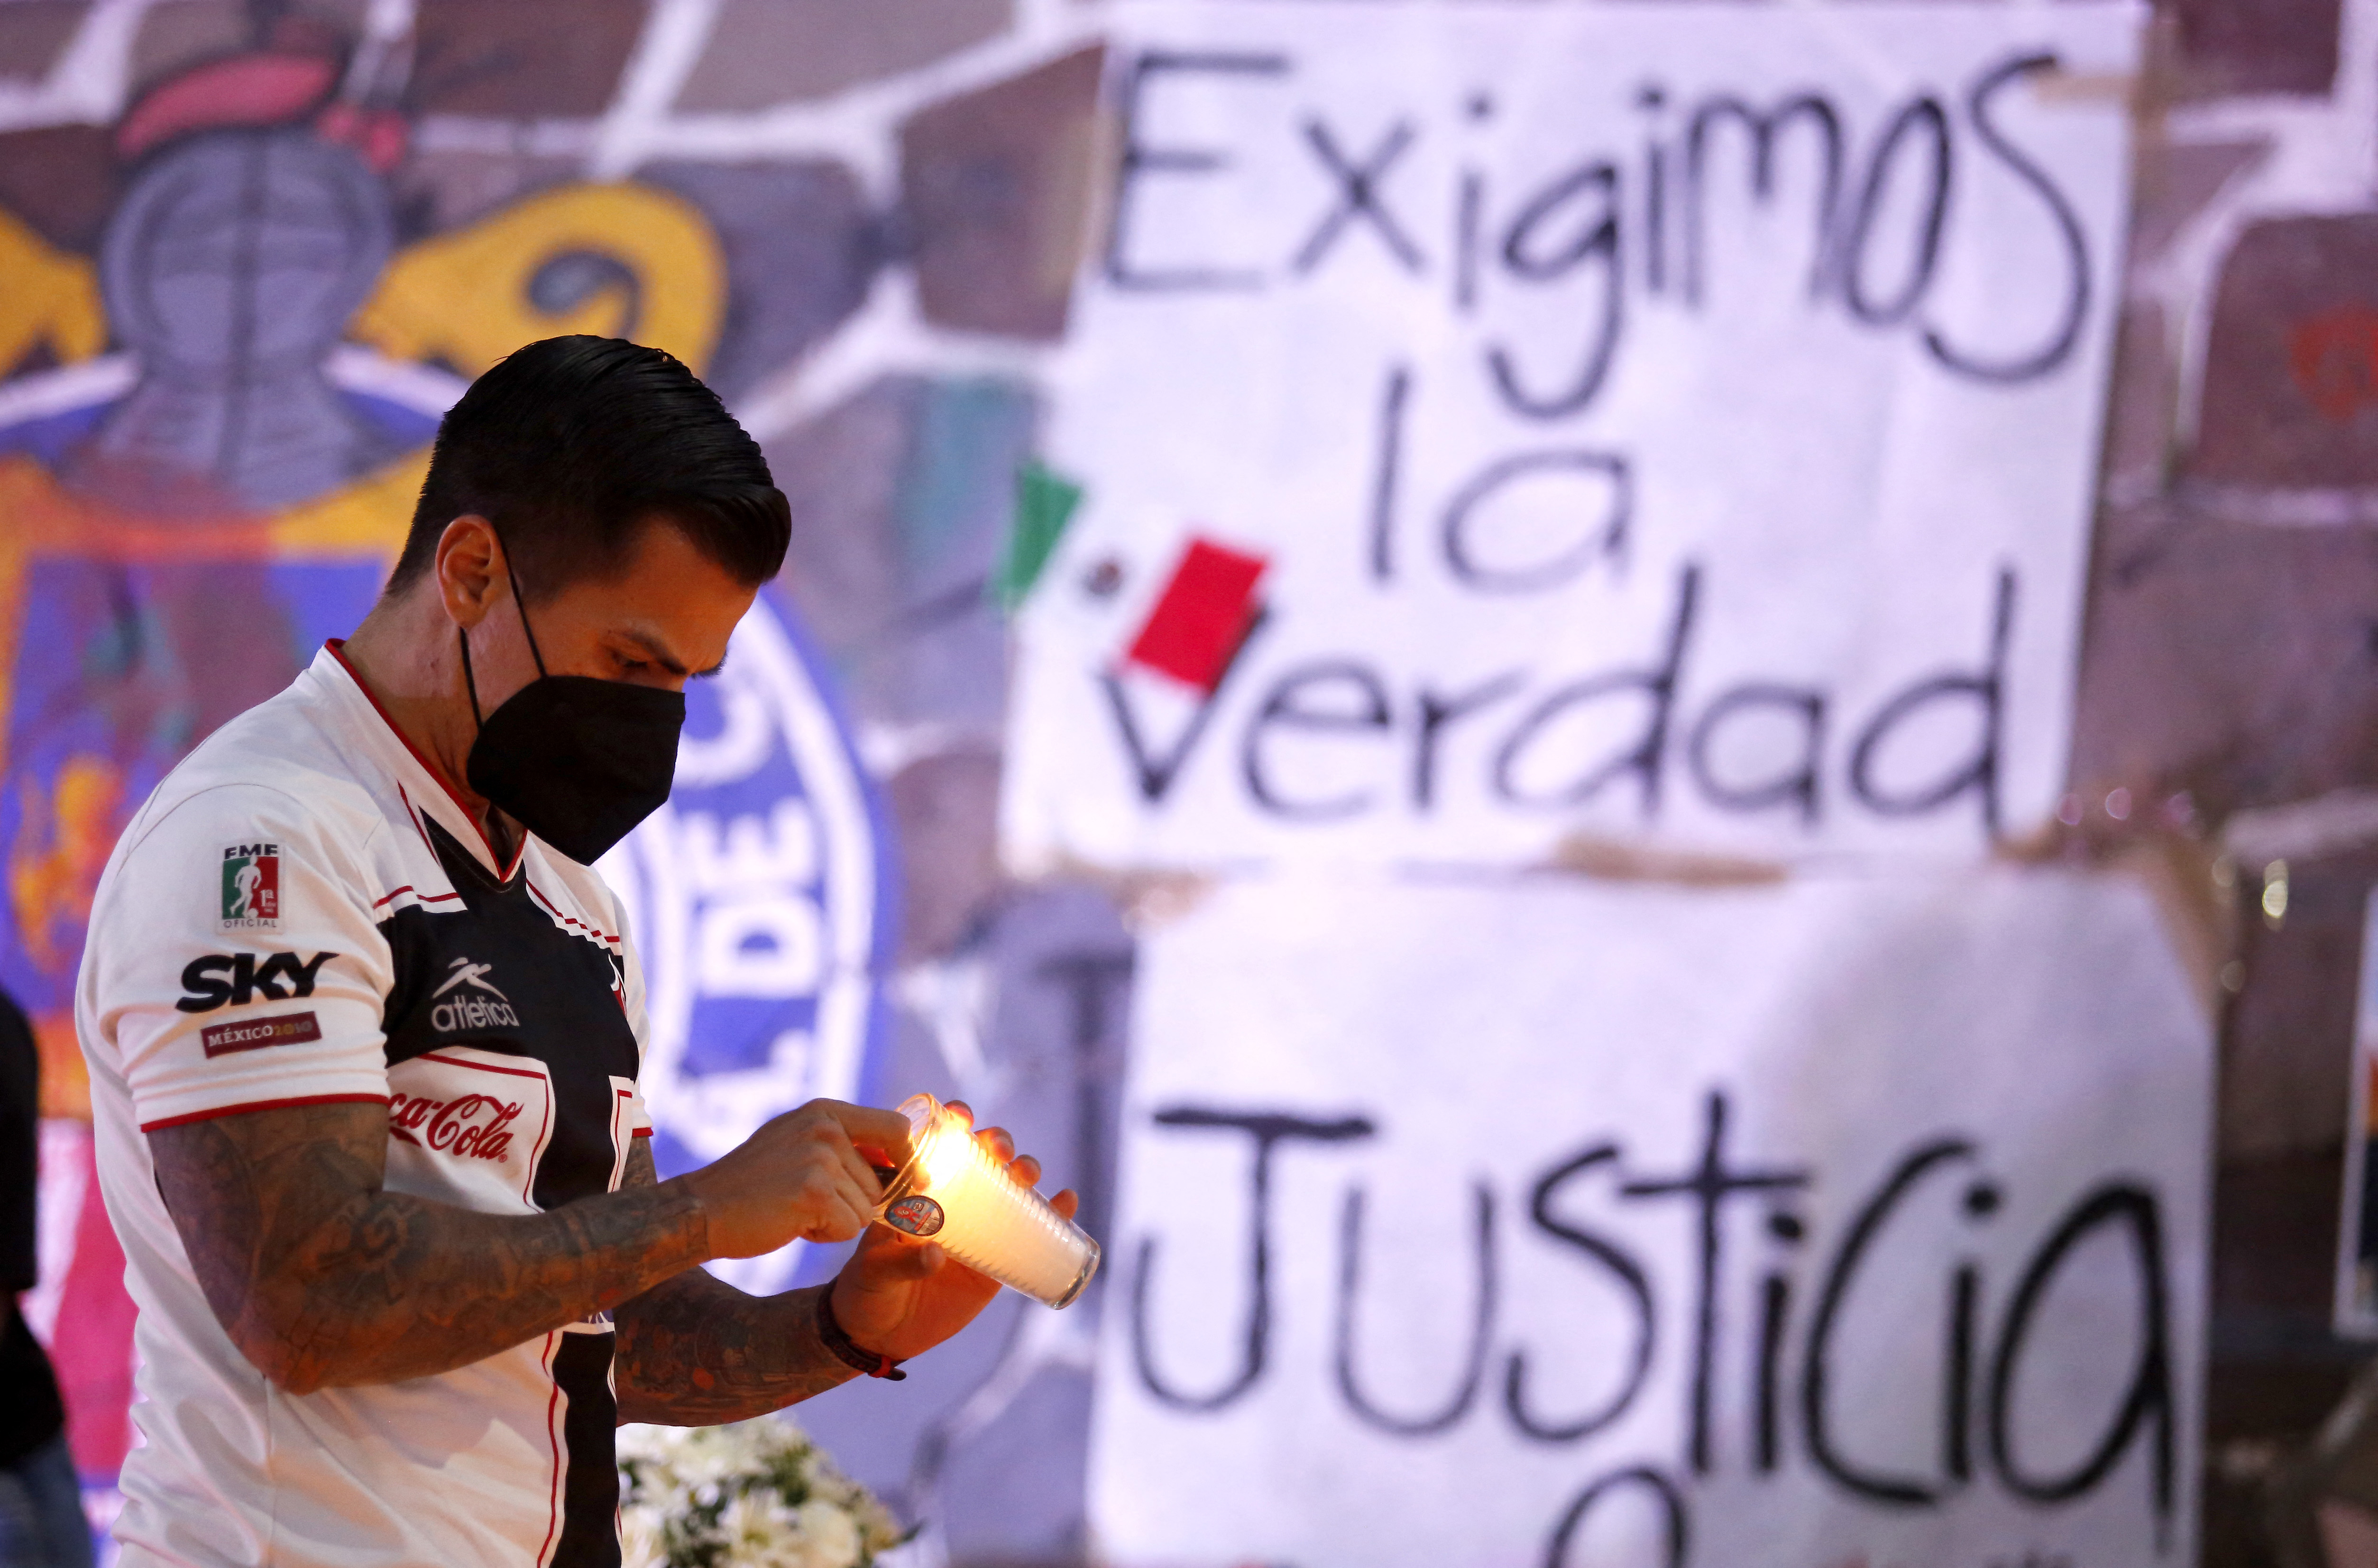 Após atos violentos em jogo, jogadores do Querétaro sofrem ameaça de morte